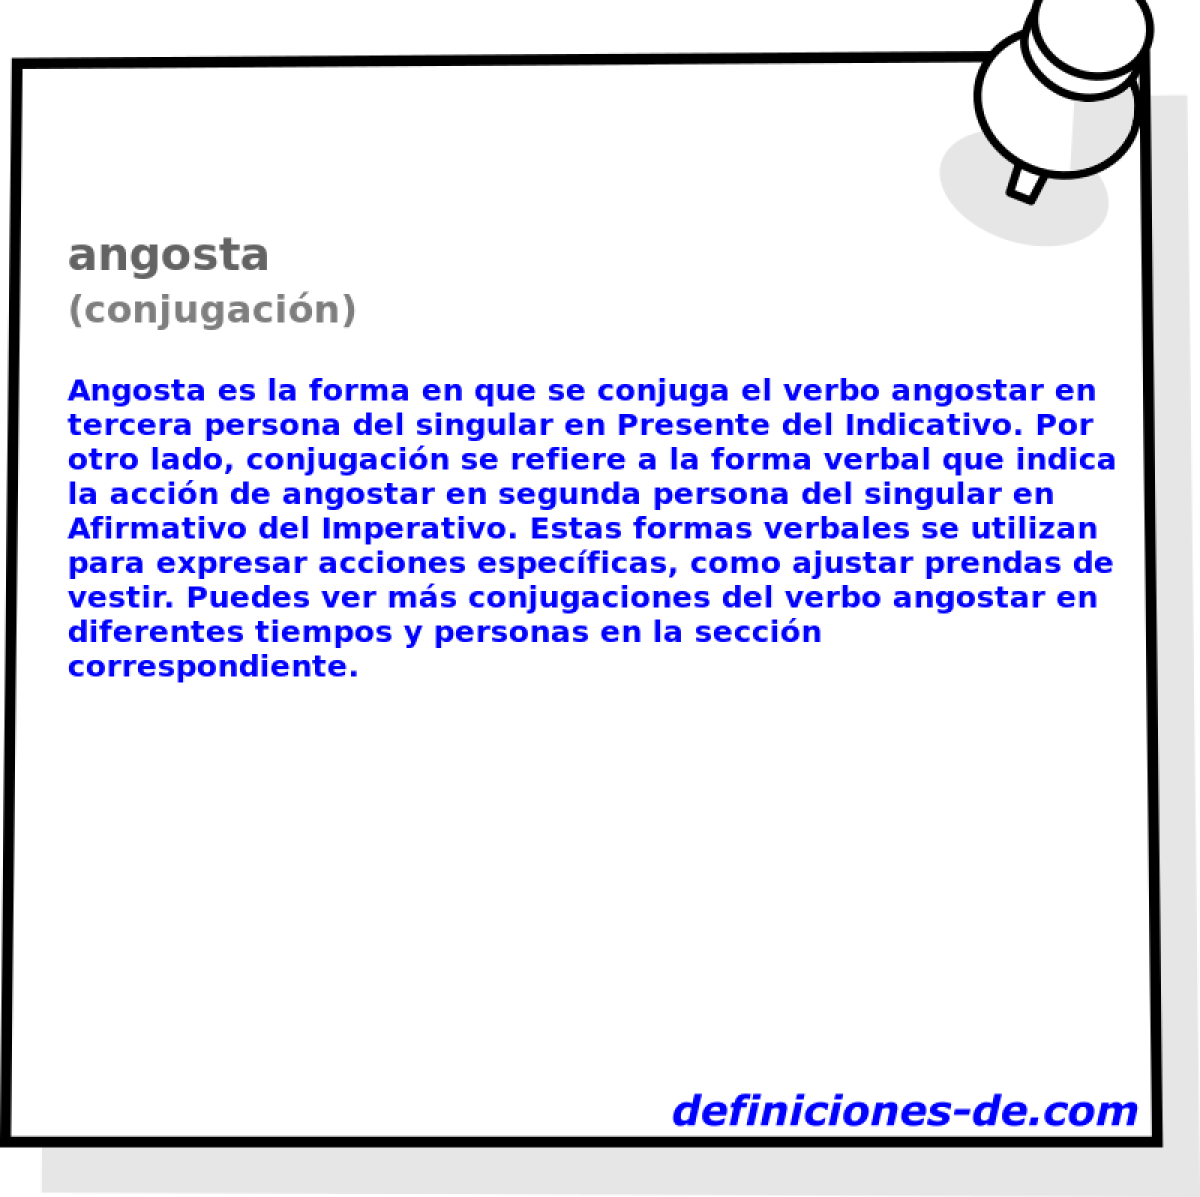 angosta (conjugacin)